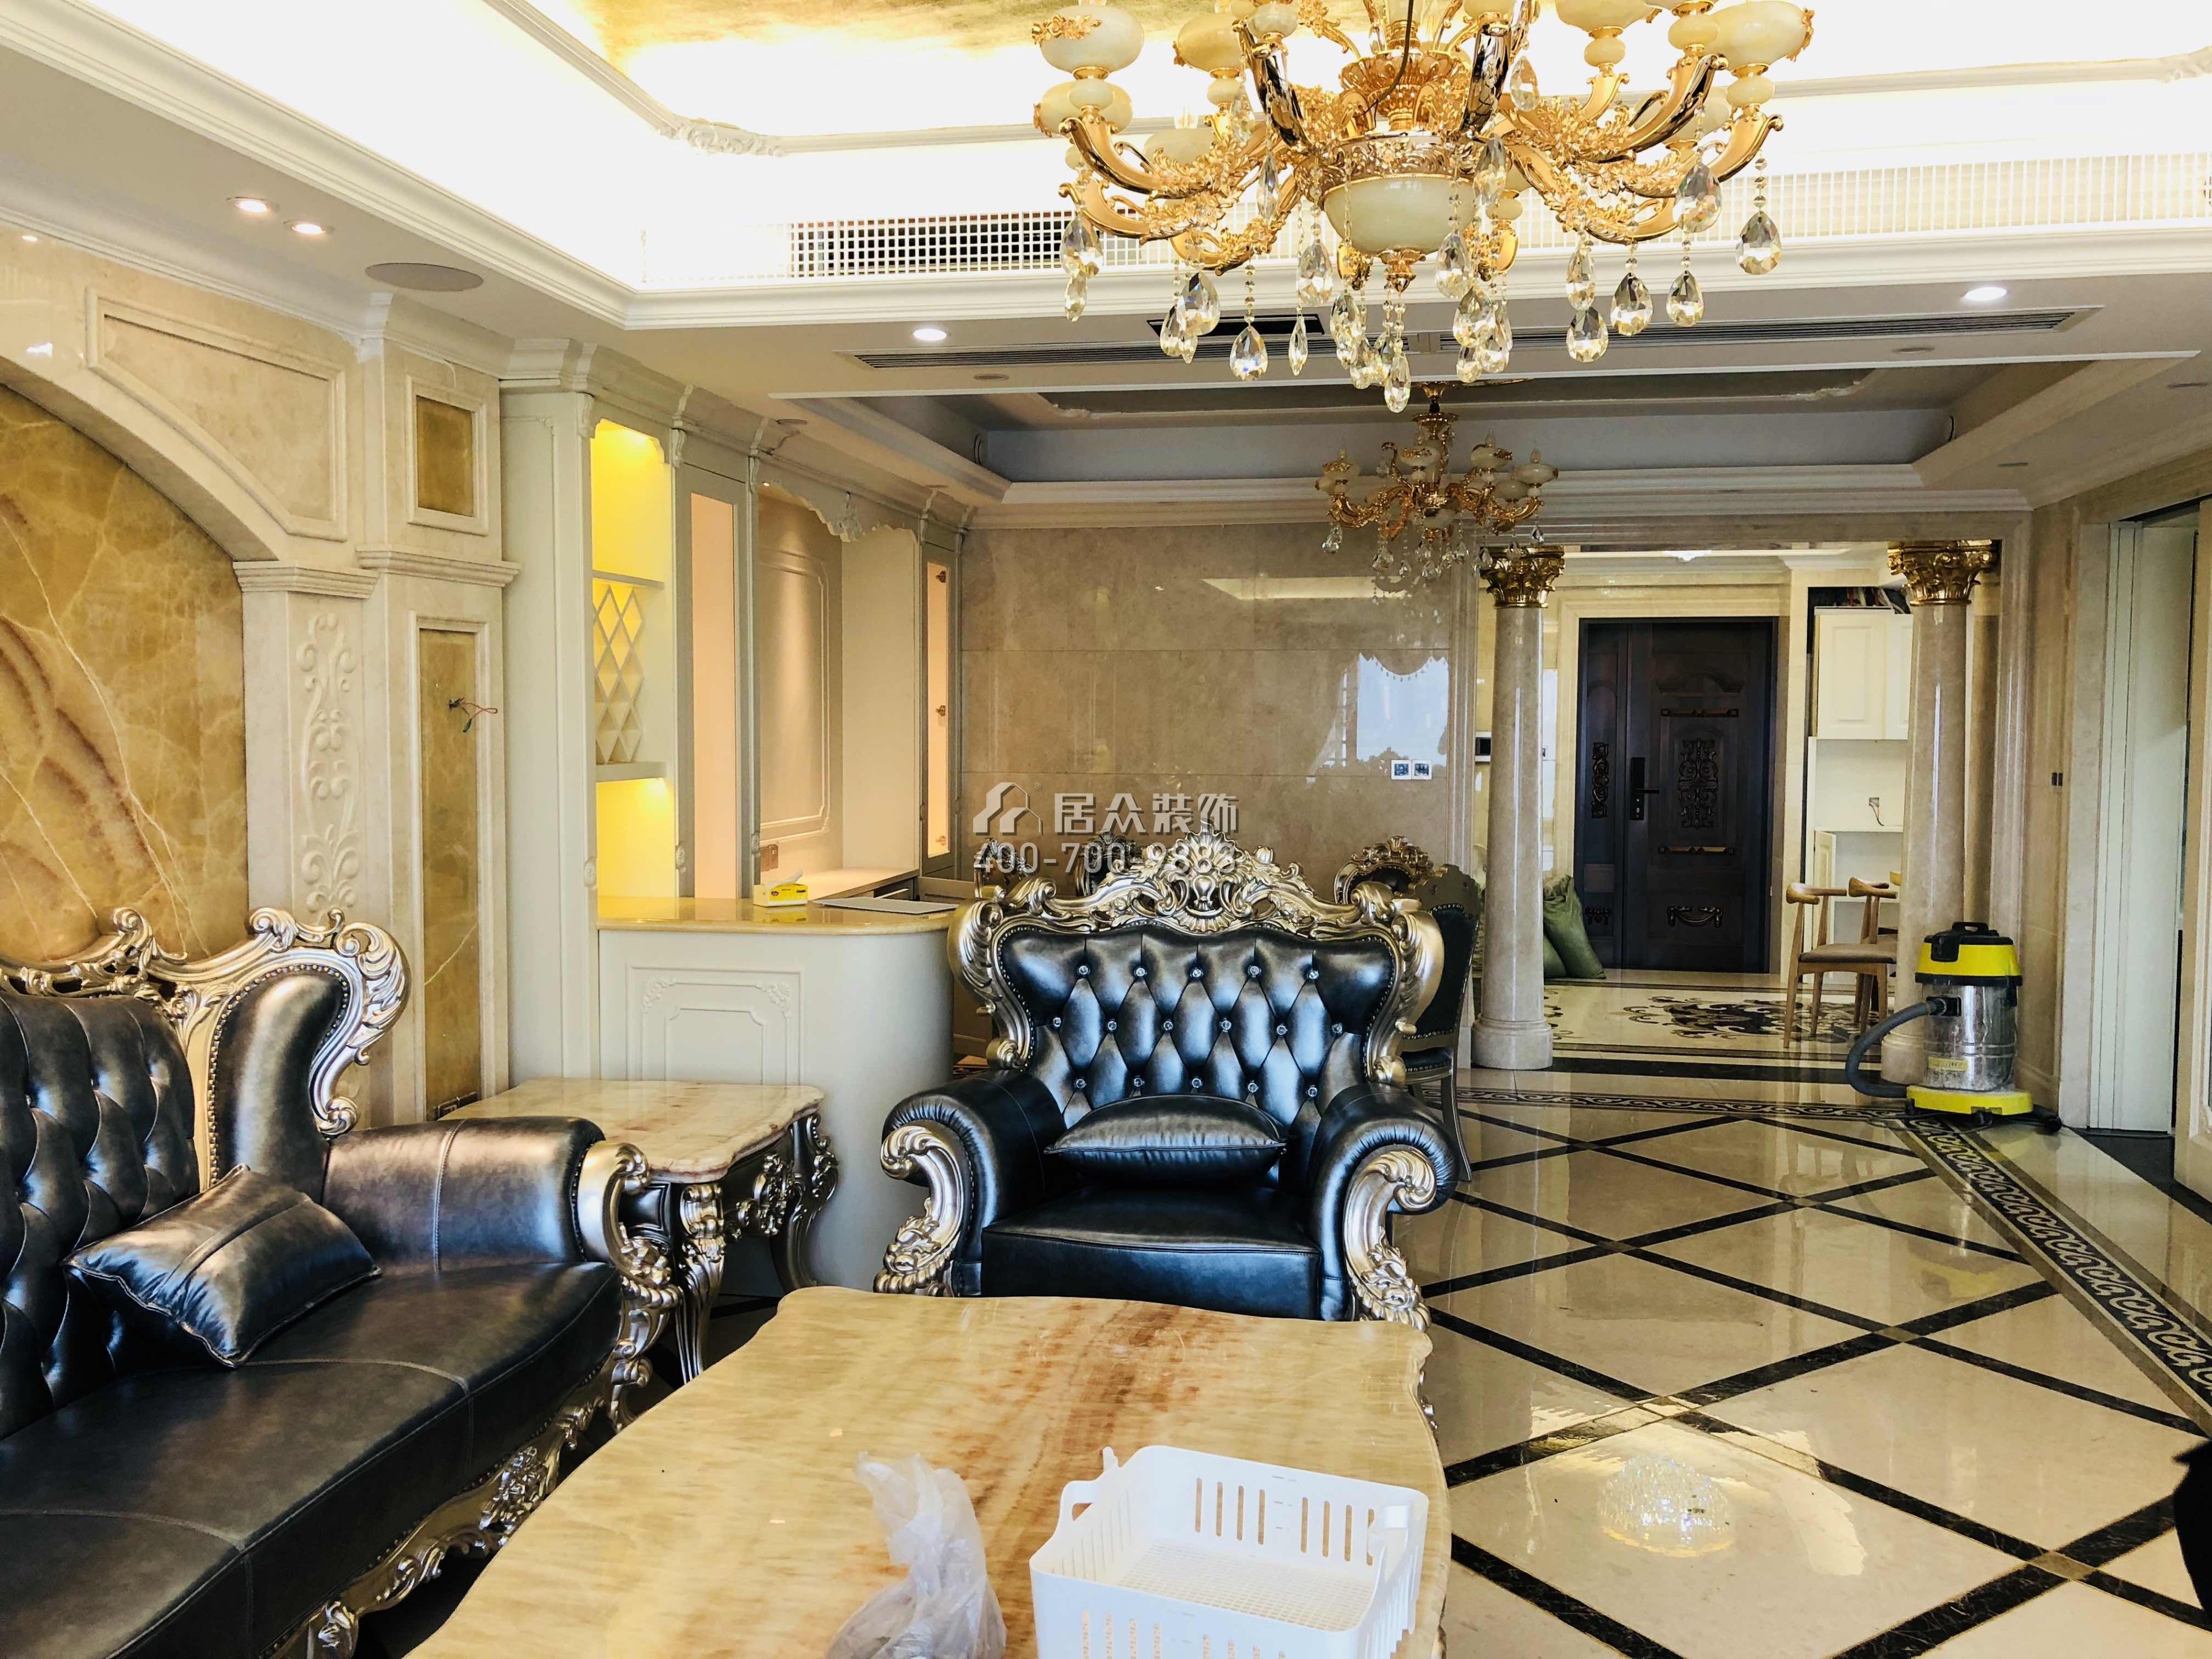 海晟维多利亚218平方米欧式风格平层户型客厅装修效果图